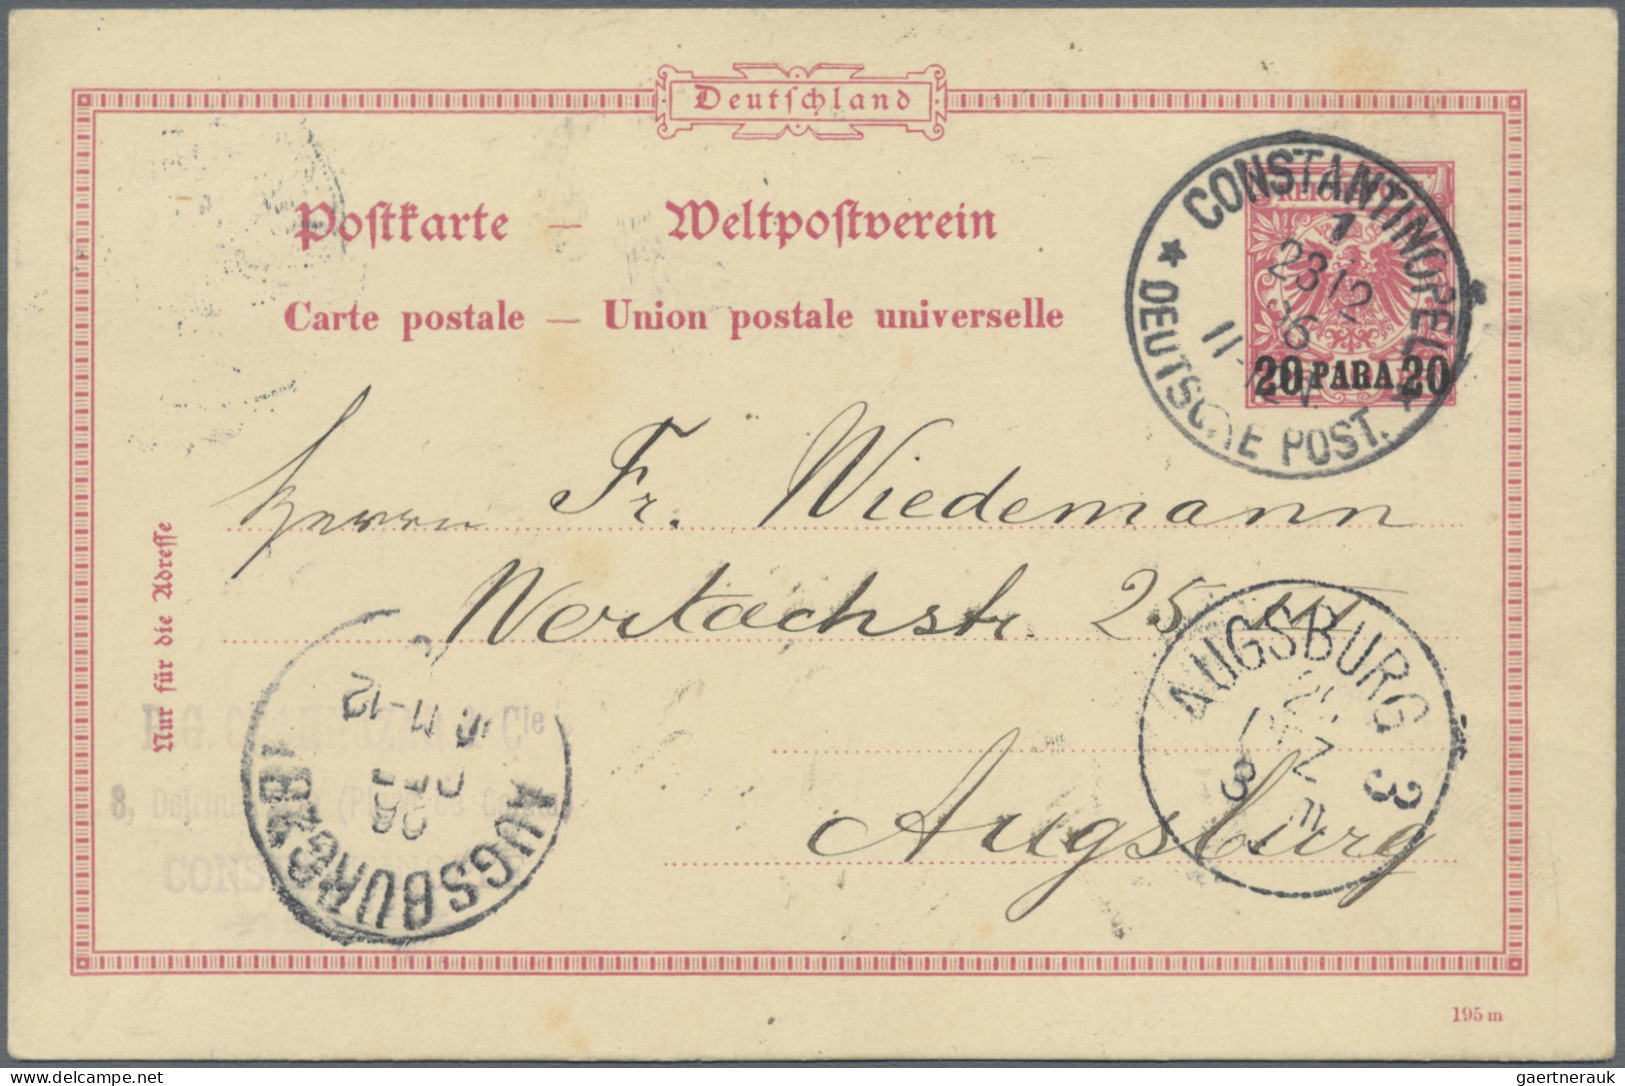 Deutsche Post in der Türkei - Ganzsachen: 1896/1912, saubere Partie von 17 gebra